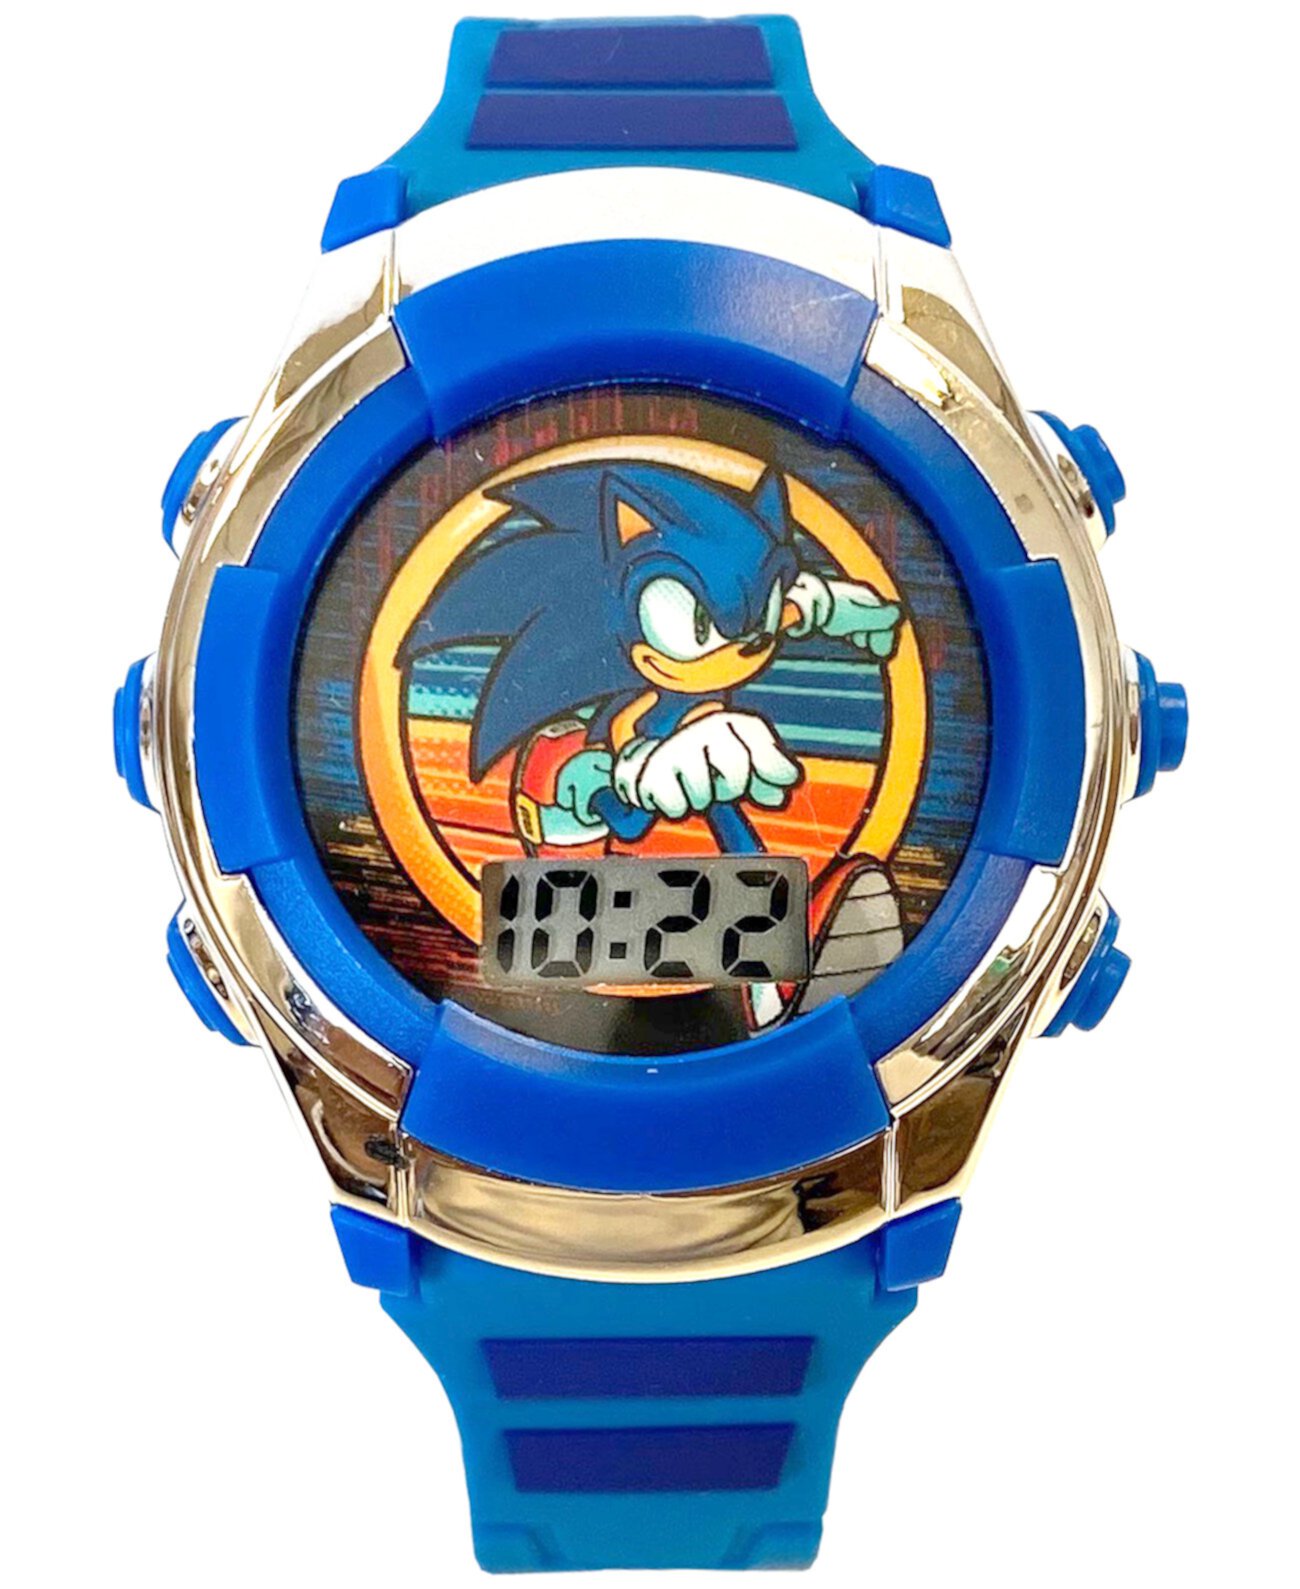 Sonic watch. Часы Соника часы Соника. Часы детские Sonic. Часы Sonic наручные. Часы с Соником наручные детские.